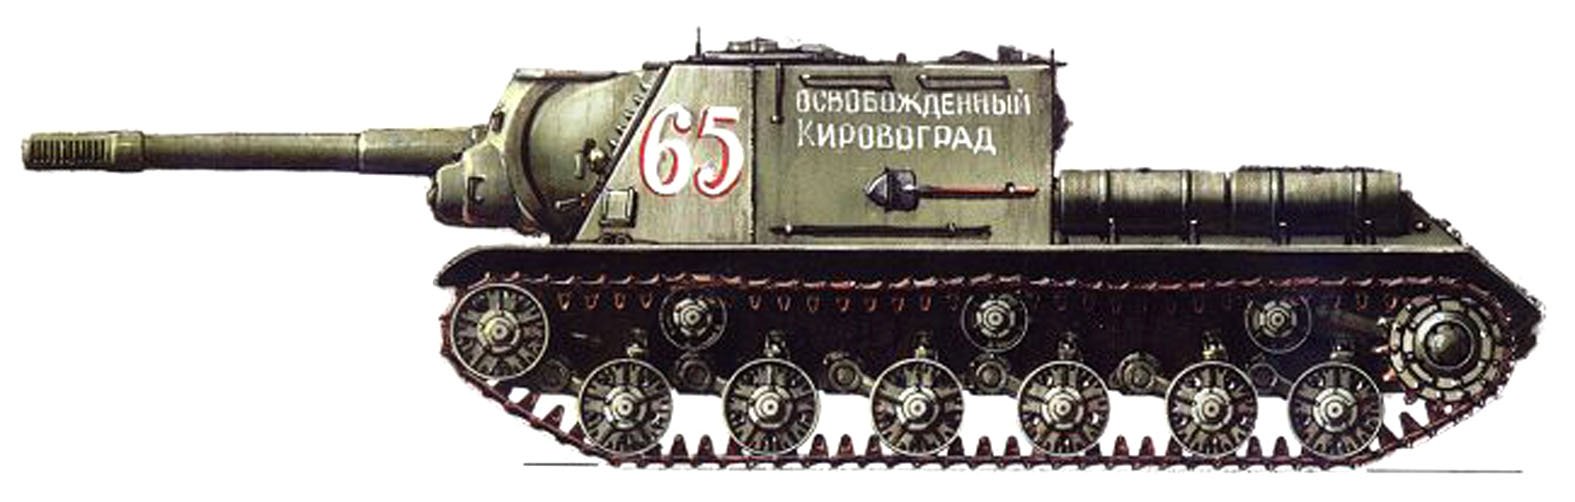 Бок ис. Самоходка ИСУ-152 зверобой. САУ Су-152 зверобой. ИСУ 152 вид сбоку. Танк СССР ИСУ 152.